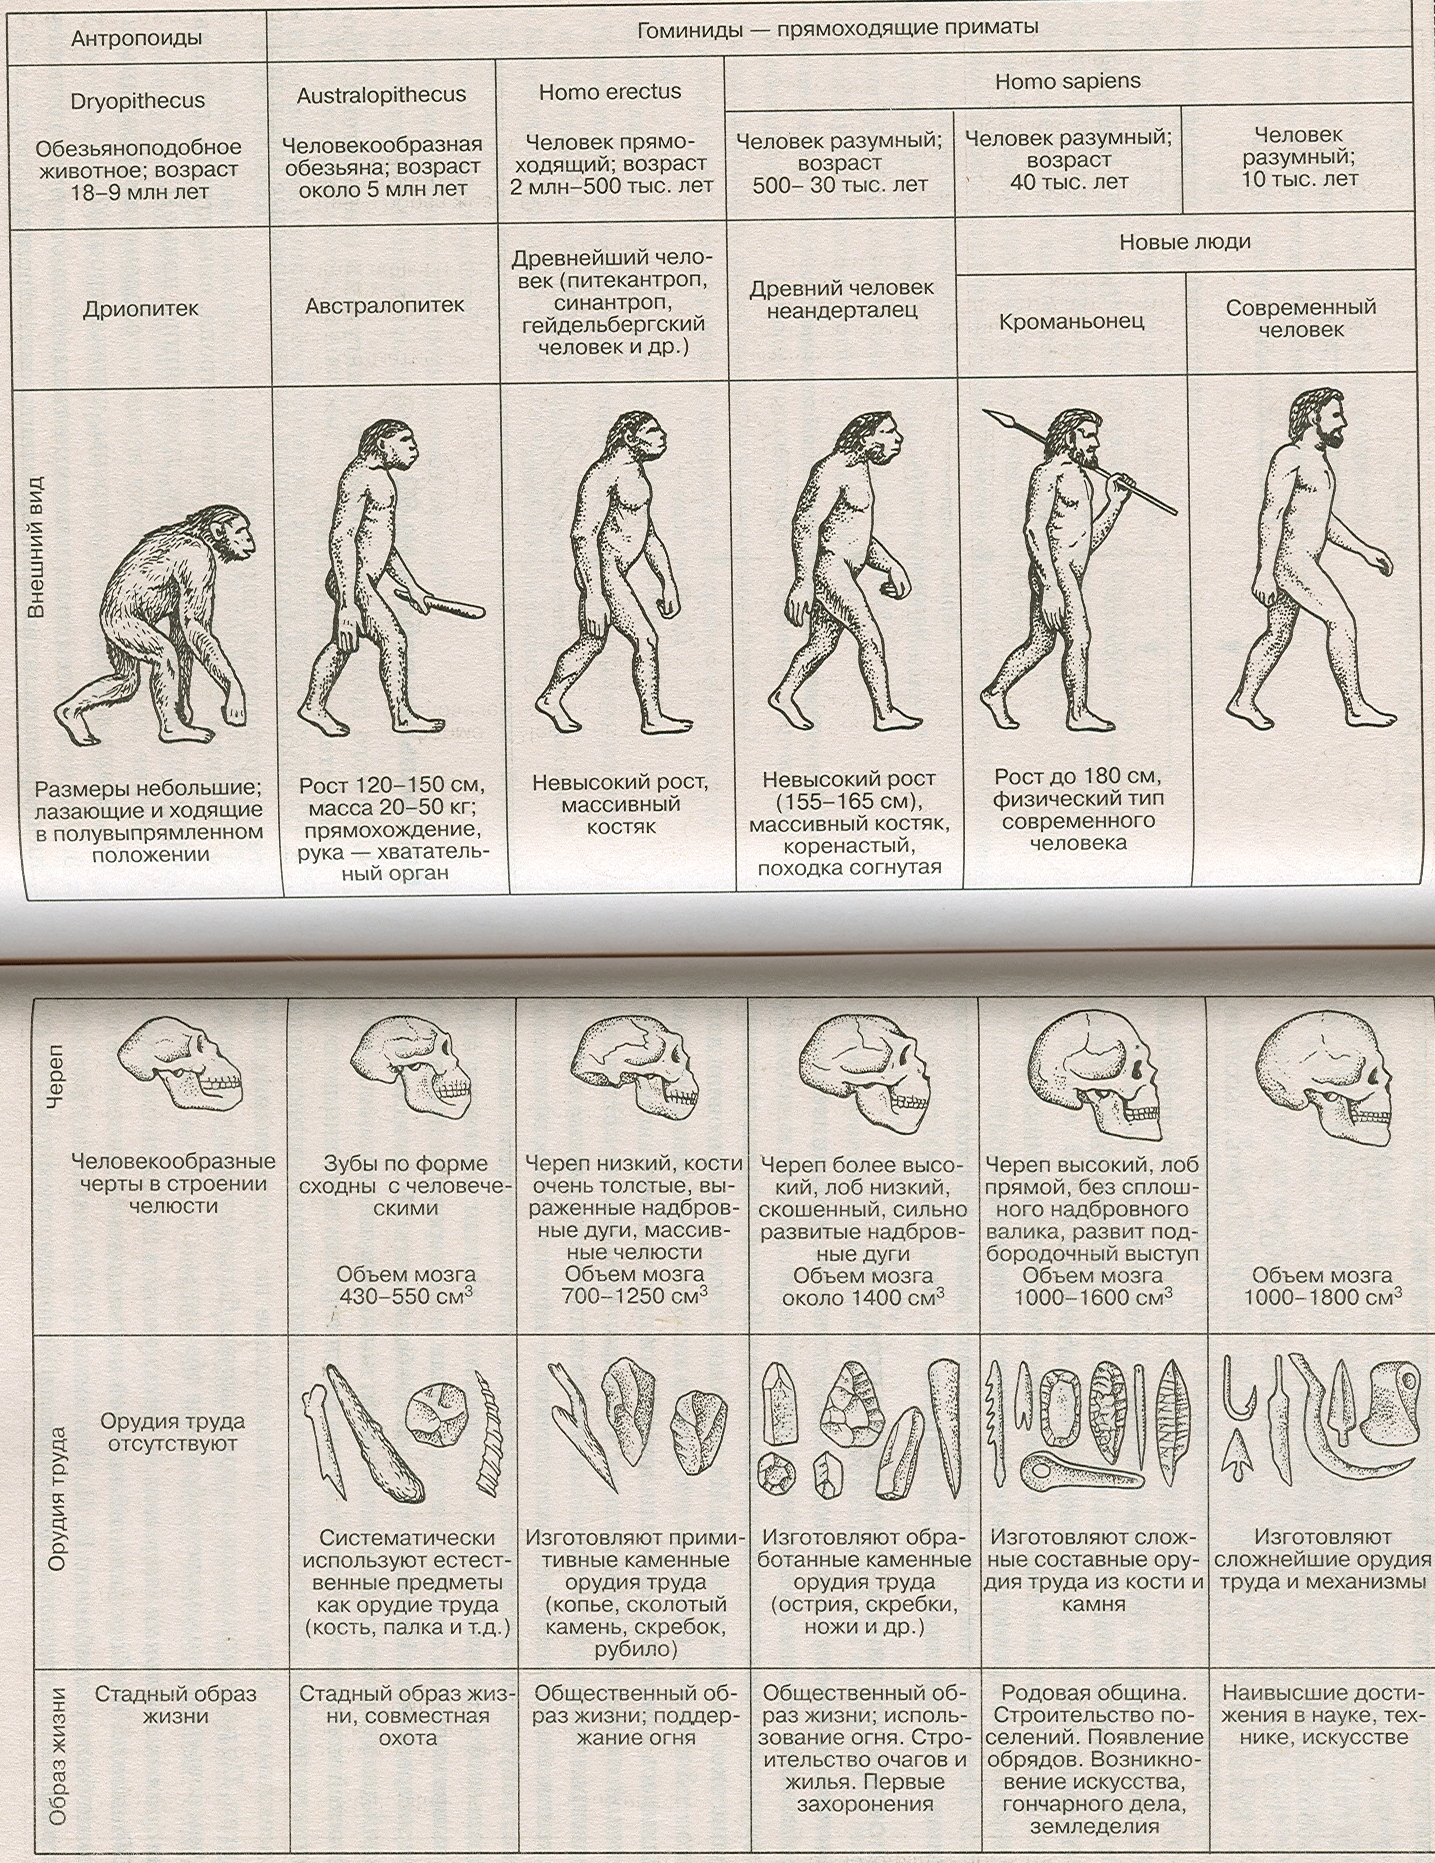 Древнейшие люди таблица. Этапы развития человека таблица этапы антропогенеза. Этапы эволюции человека таблица дриопитек. Основные стадии развития человека таблица. Стадия развития человека таблица по биологии.